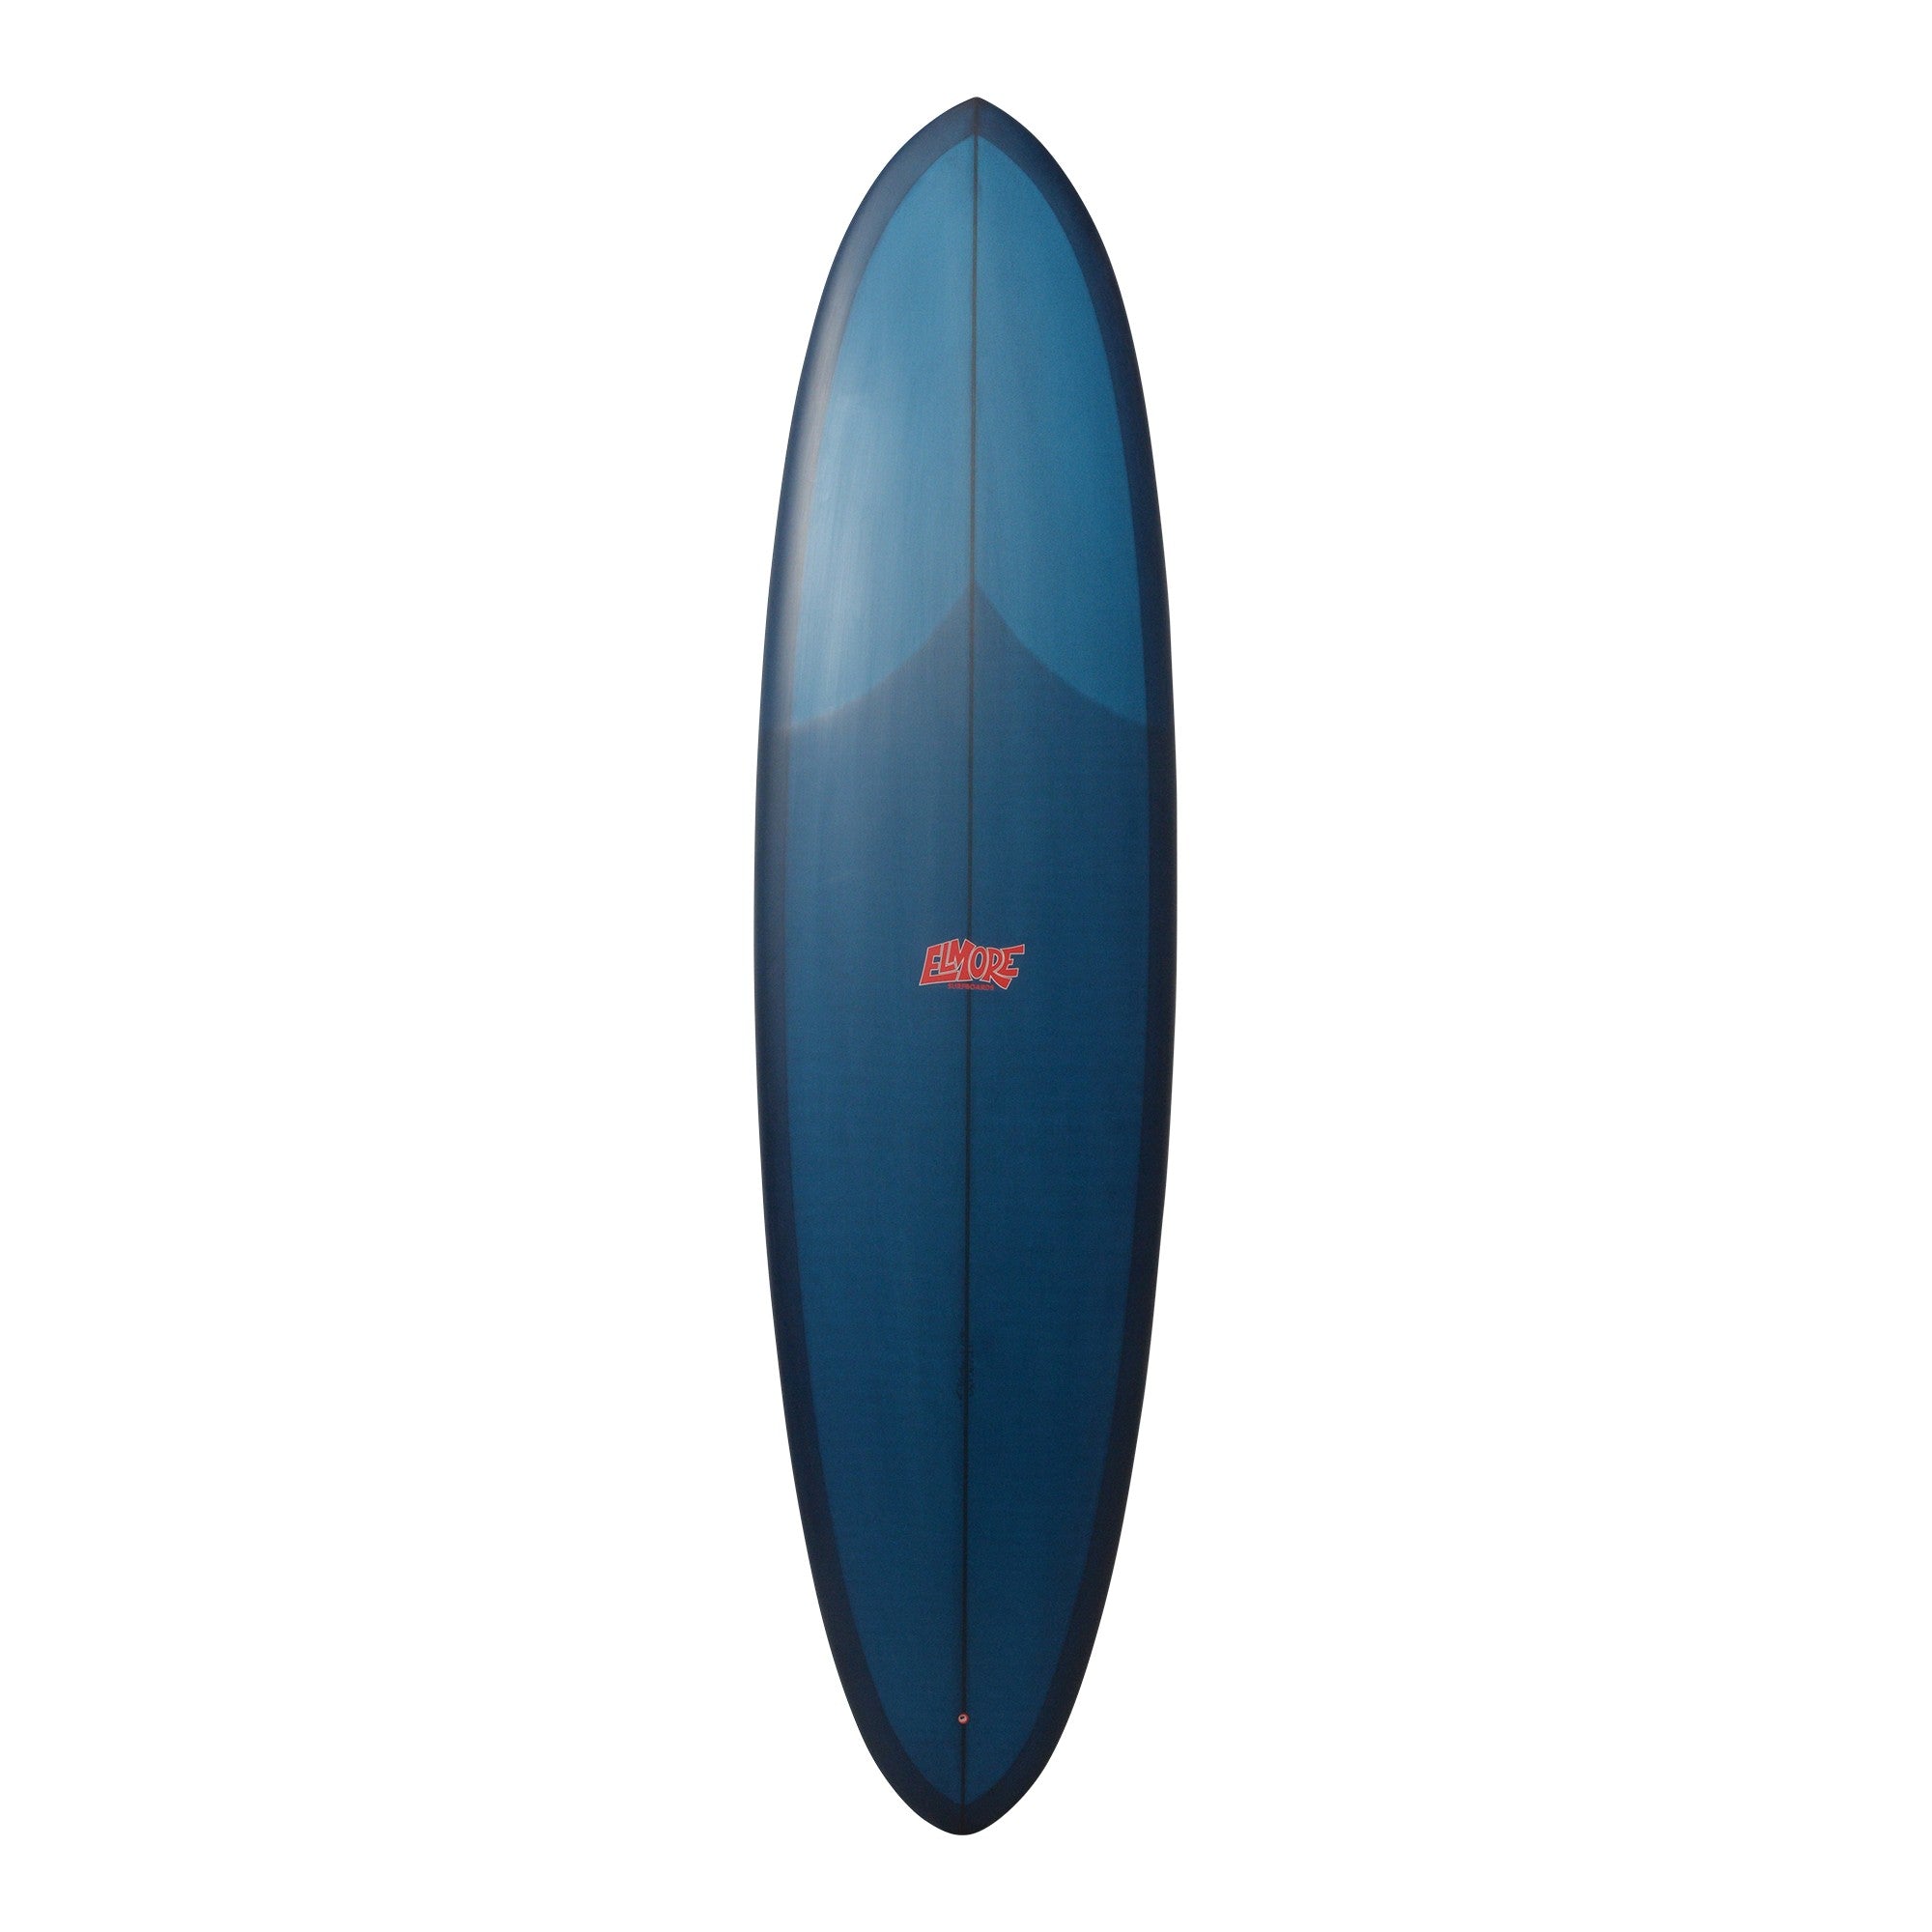 Tablas de surf ELMORE - Eggman 7'2 (PU) - Azul marino